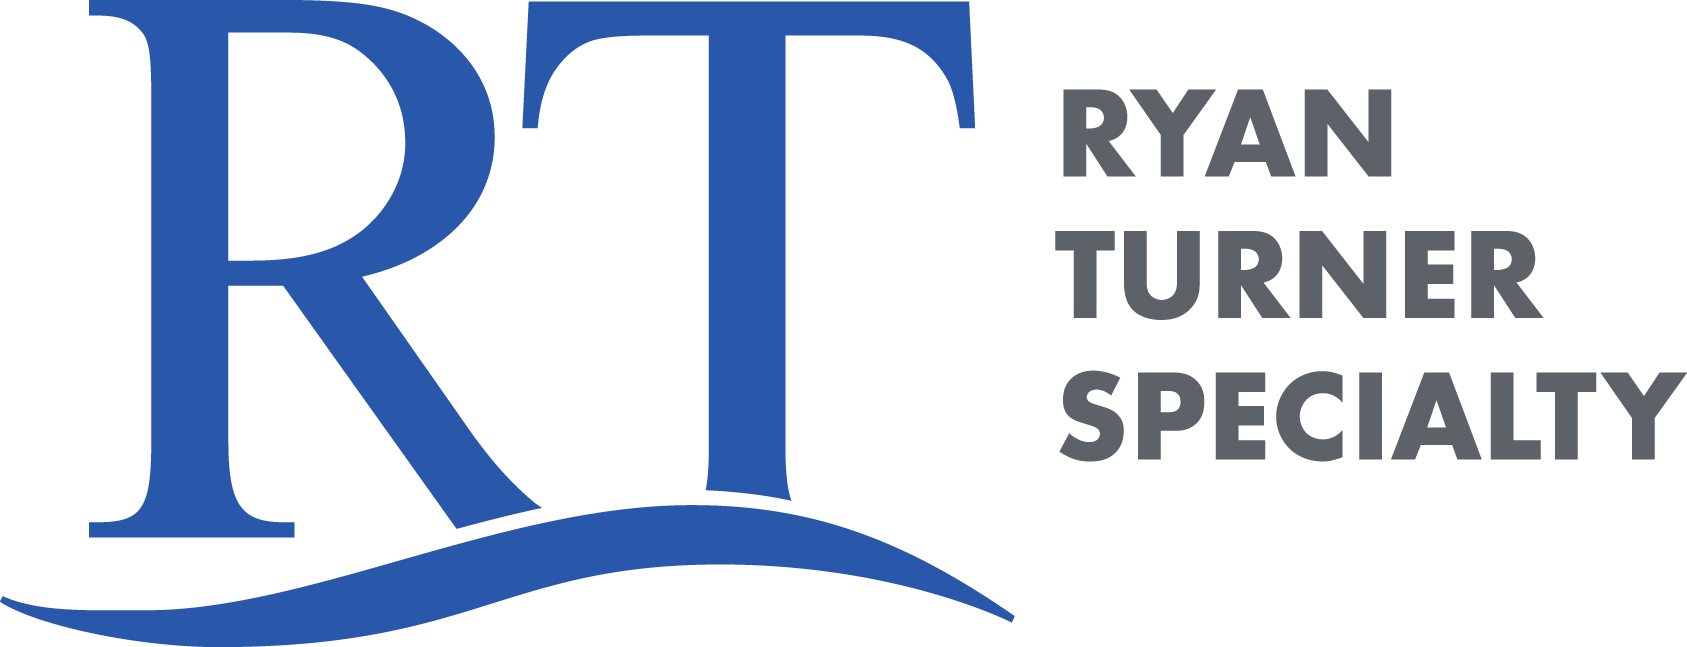 rt logo